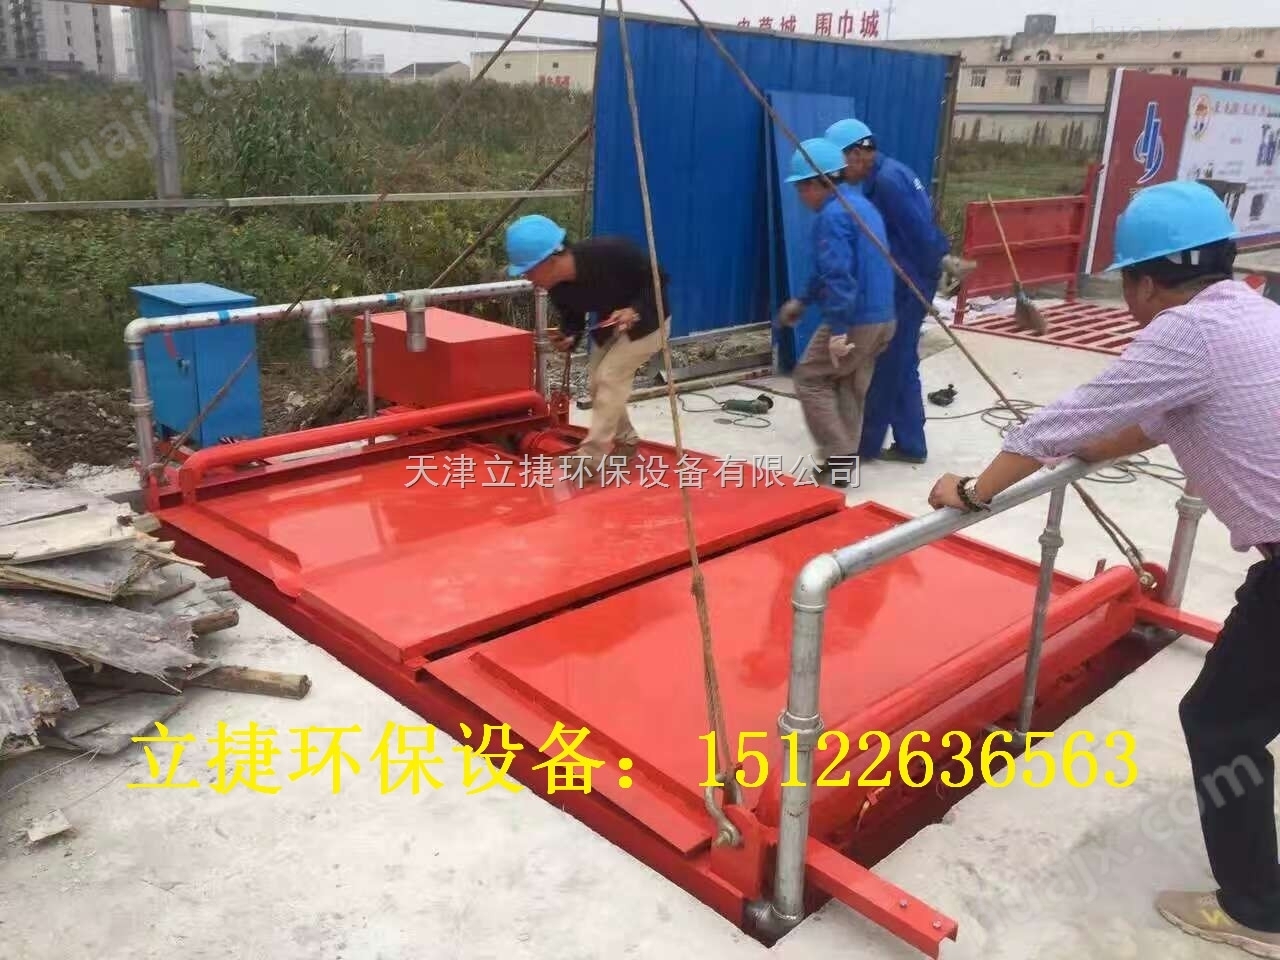 天津滨海新区滚轴式洗车机立捷jklj-110-g